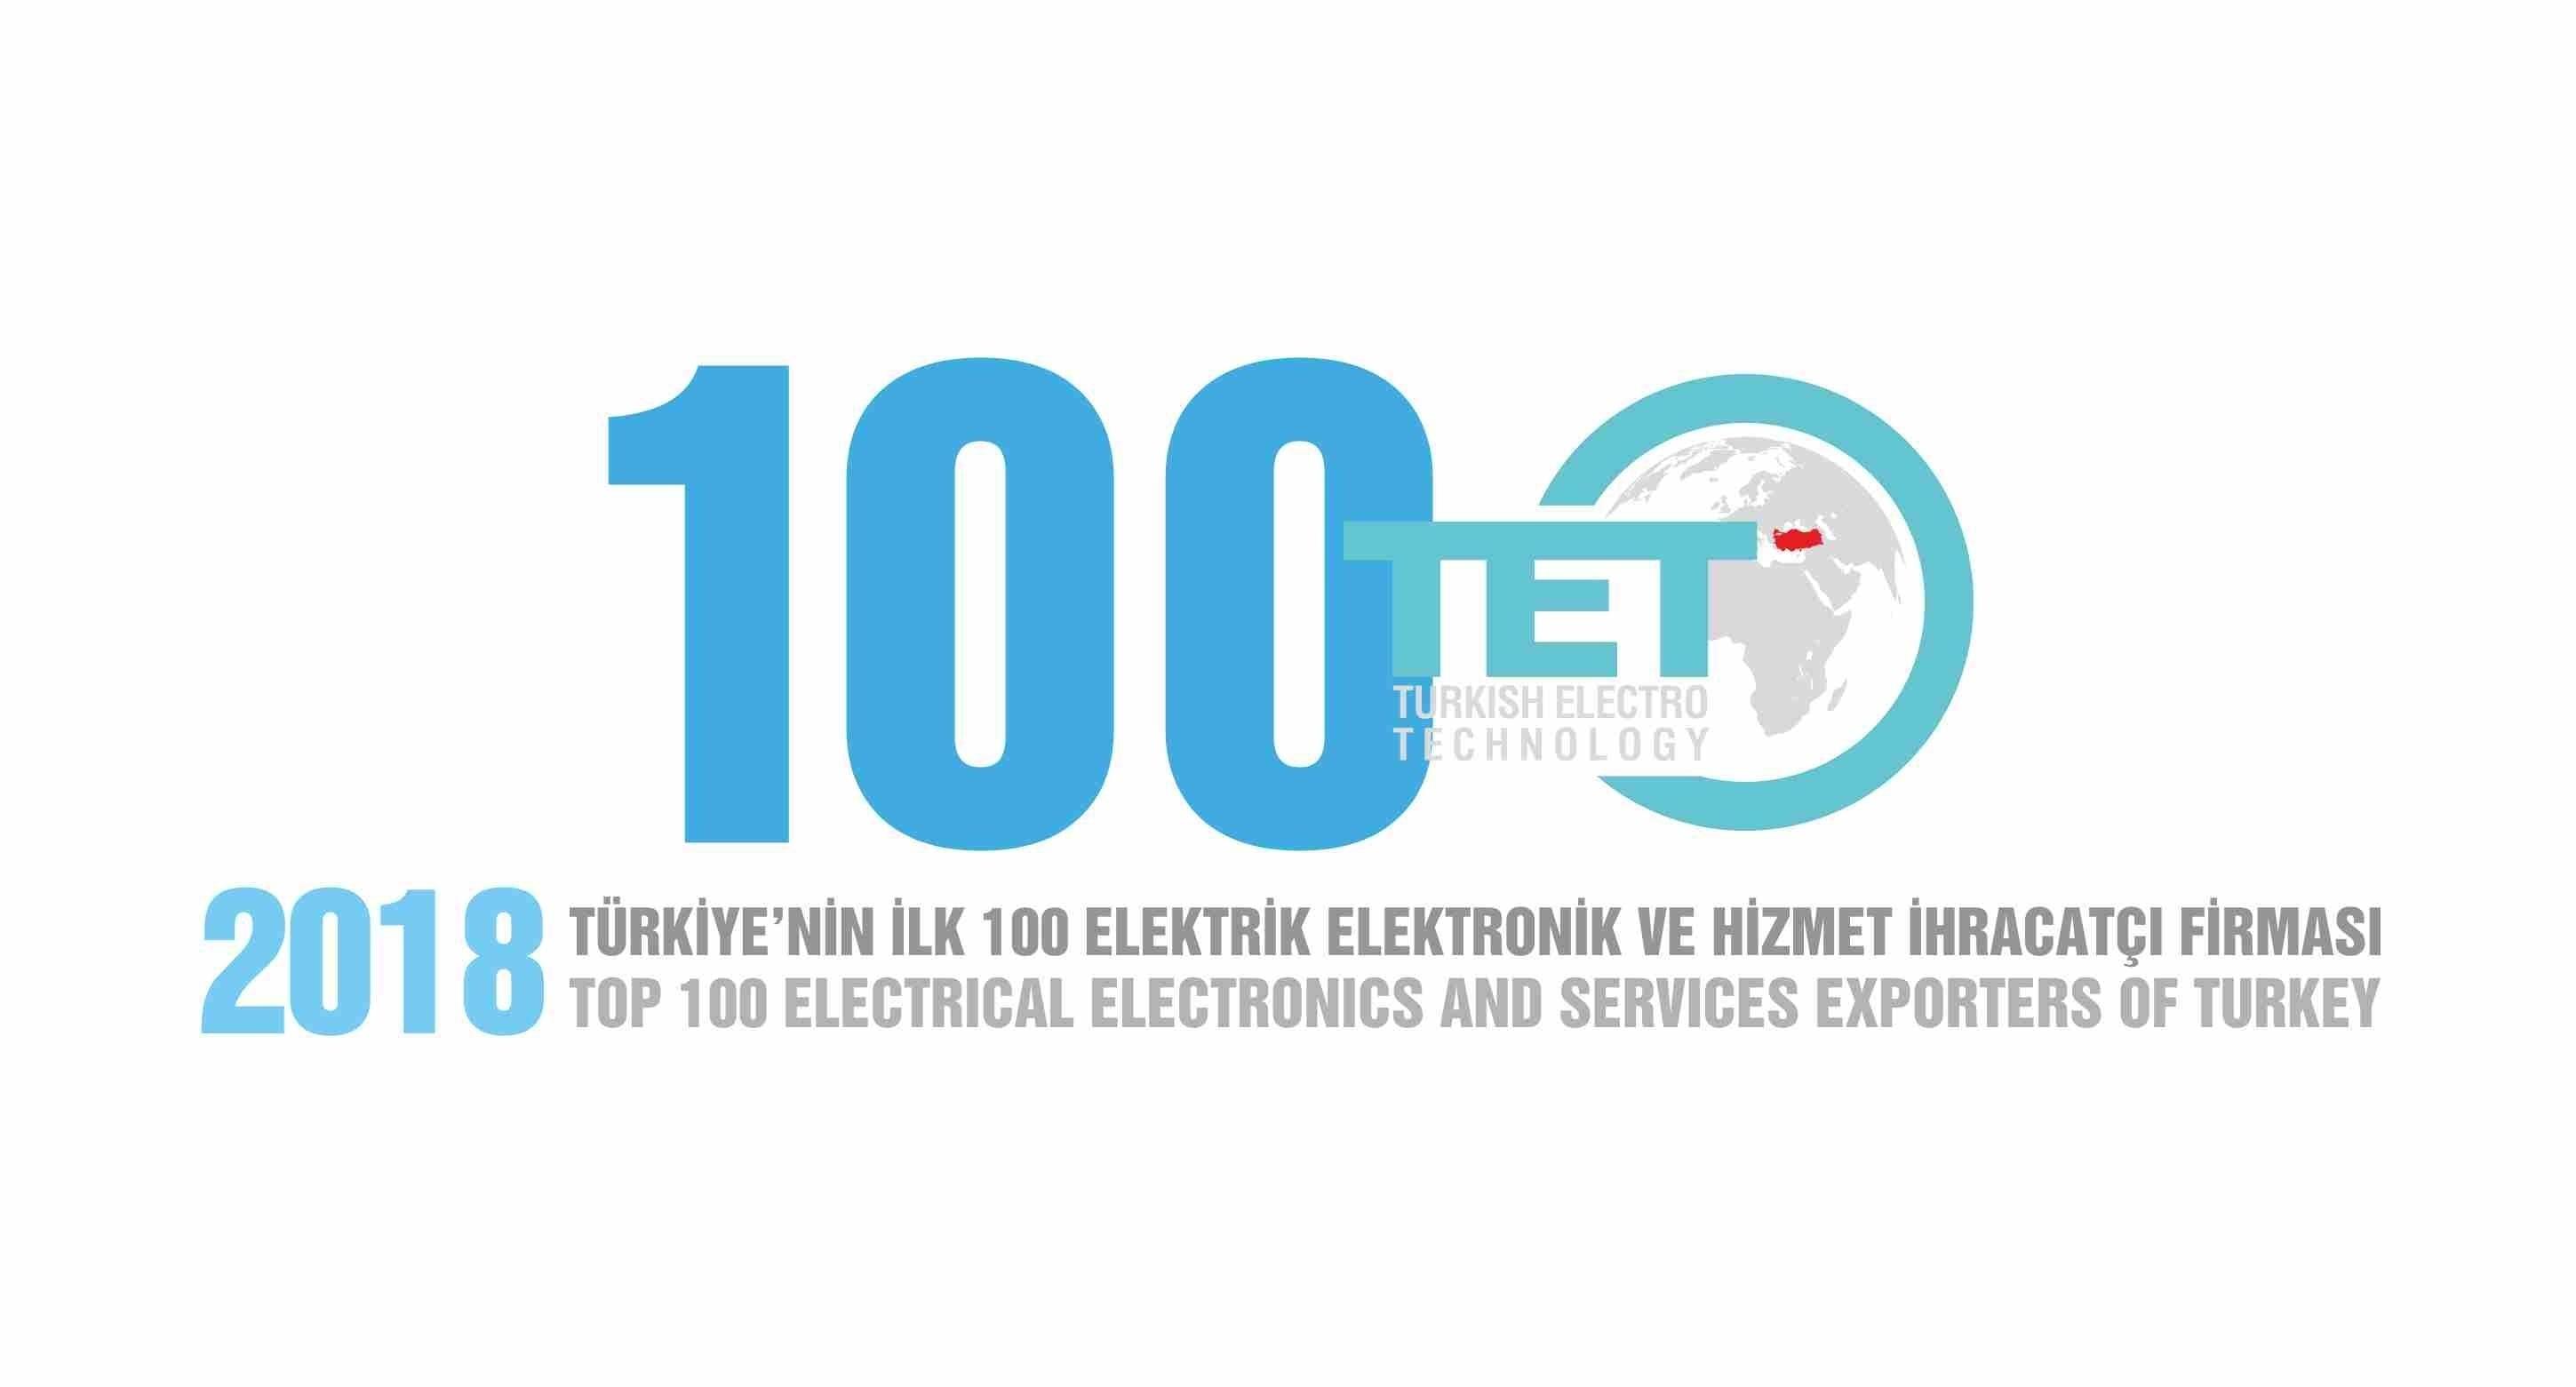 Мы рады сообщить вам, что EMSA  награждена Ассоциацией Экспортеров Электротехники, Электроники и Услуг Турции (TET),  как один из ТОП-100 ЭКСПОРТЕРОВ за 2018 год.